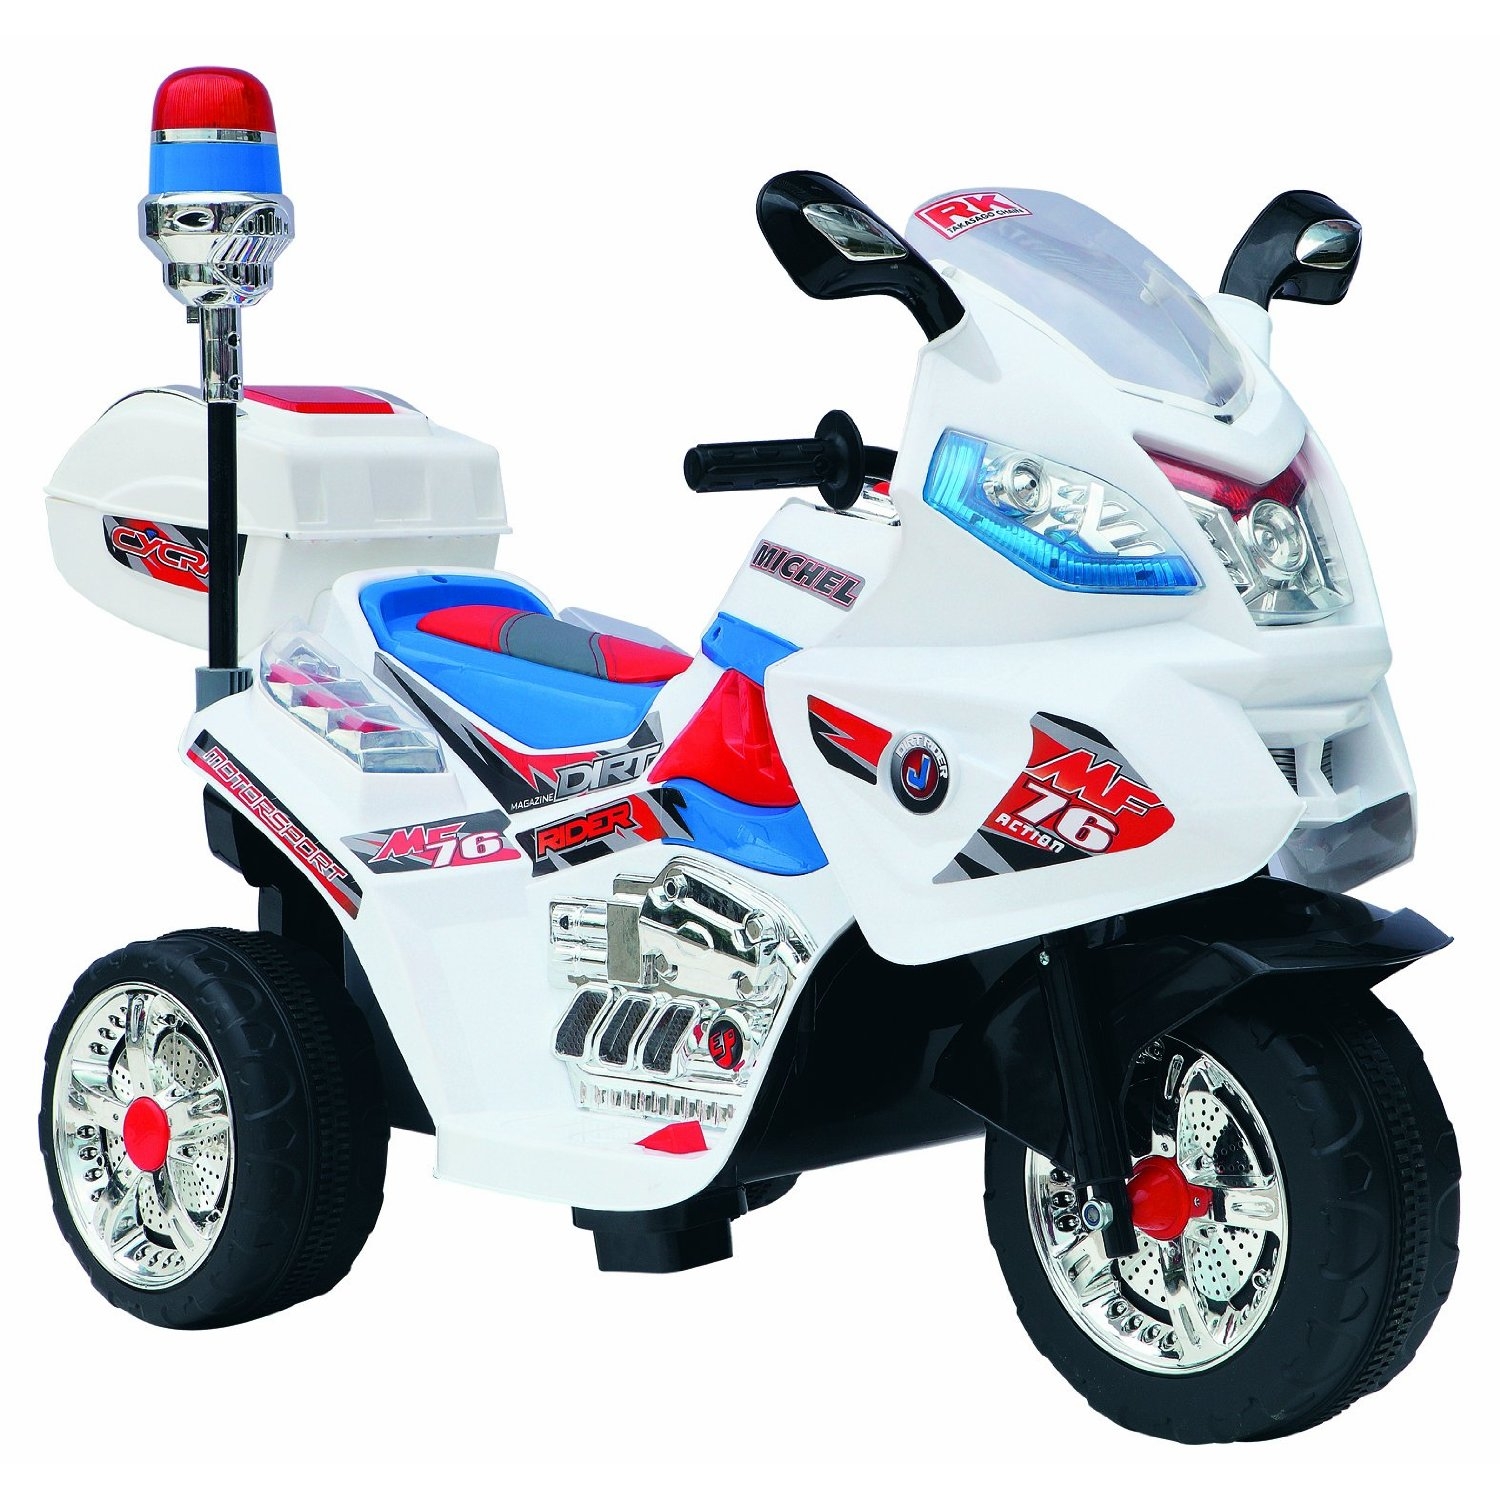 Police MotorBike Trike 6v Ride-0n Toy